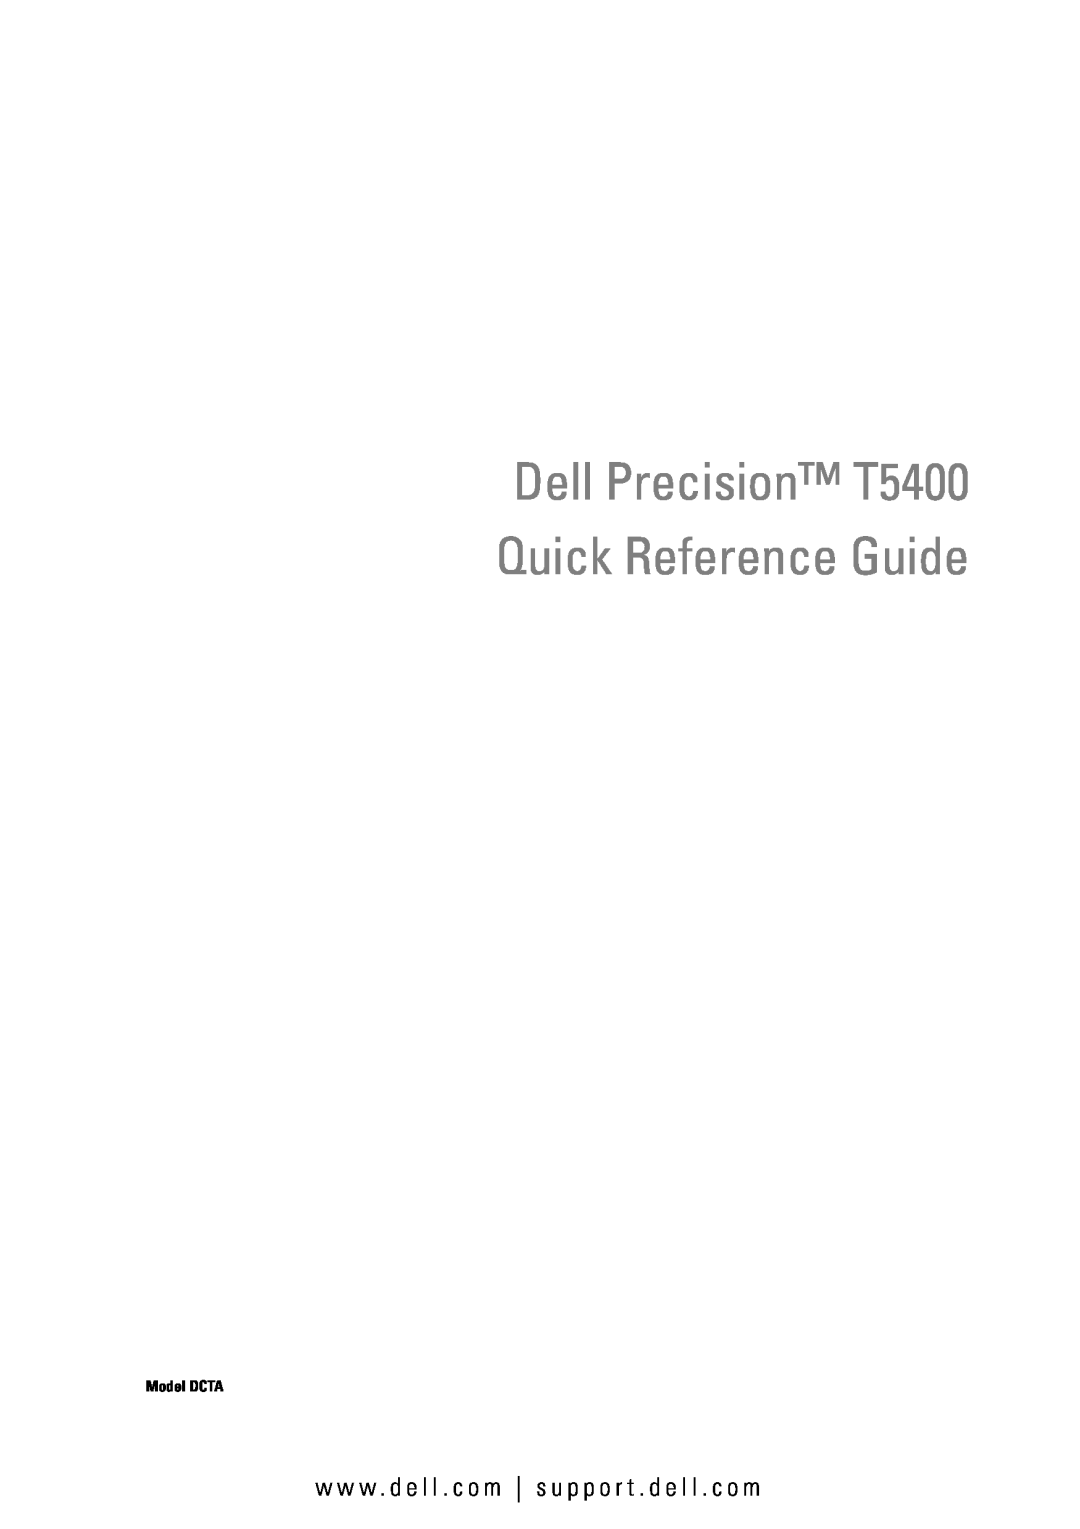 Dell manual Dell Precision T5400 Quick Reference Guide, w w w . d e l l . c o m s u p p o r t . d e l l . c o m 